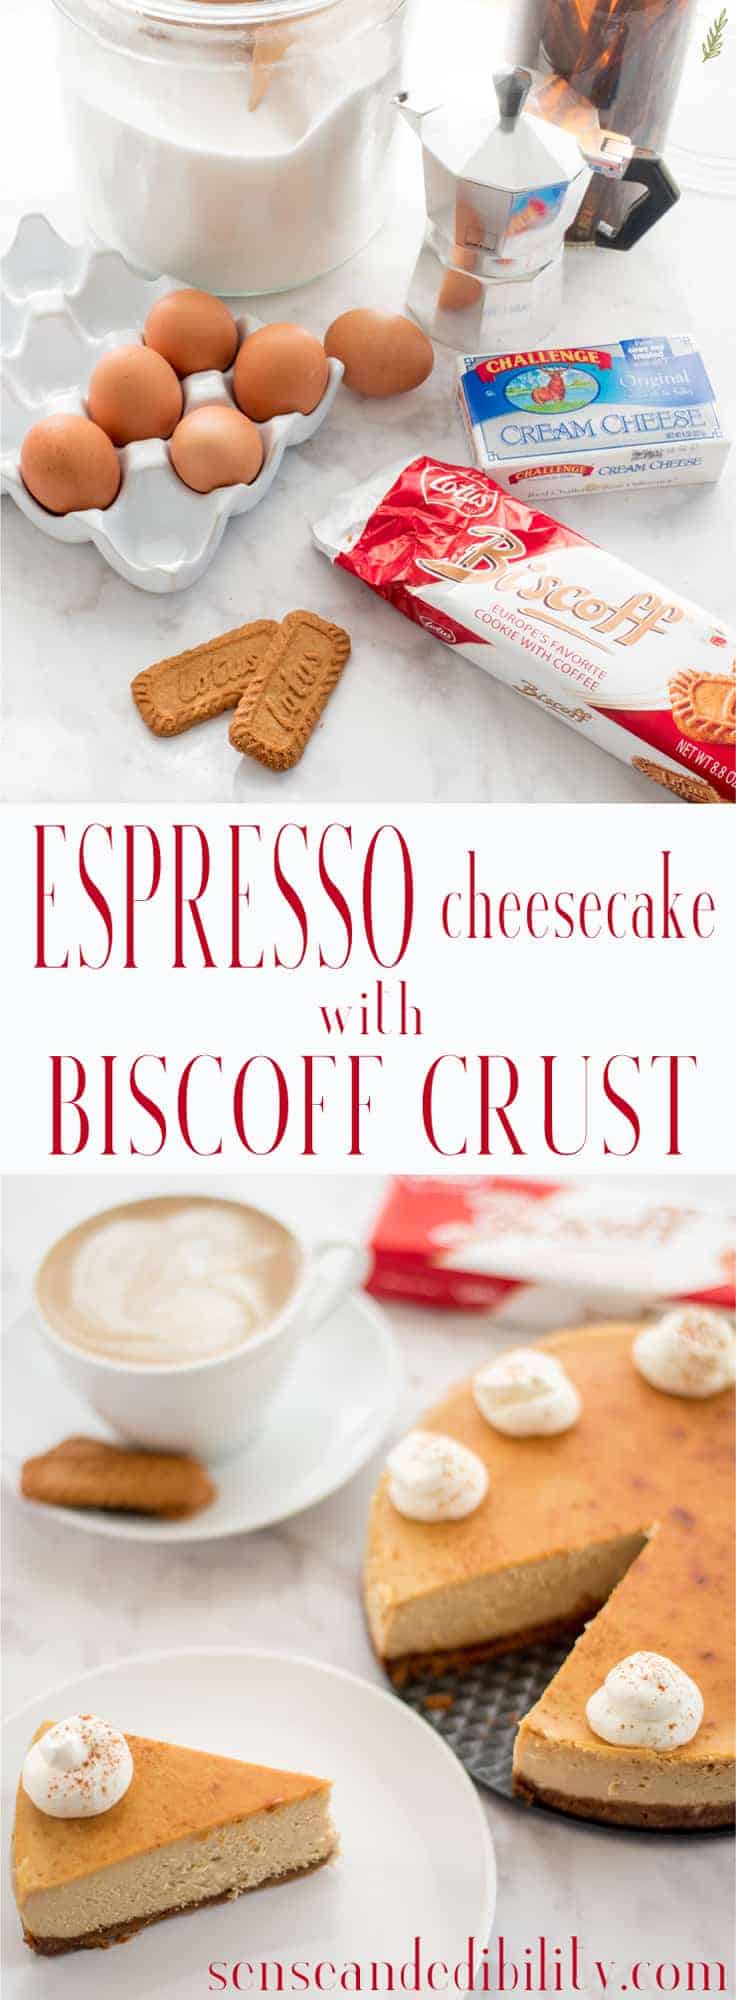 Sense & Edibility's Espresso Cheesecake with Biscoff Crust